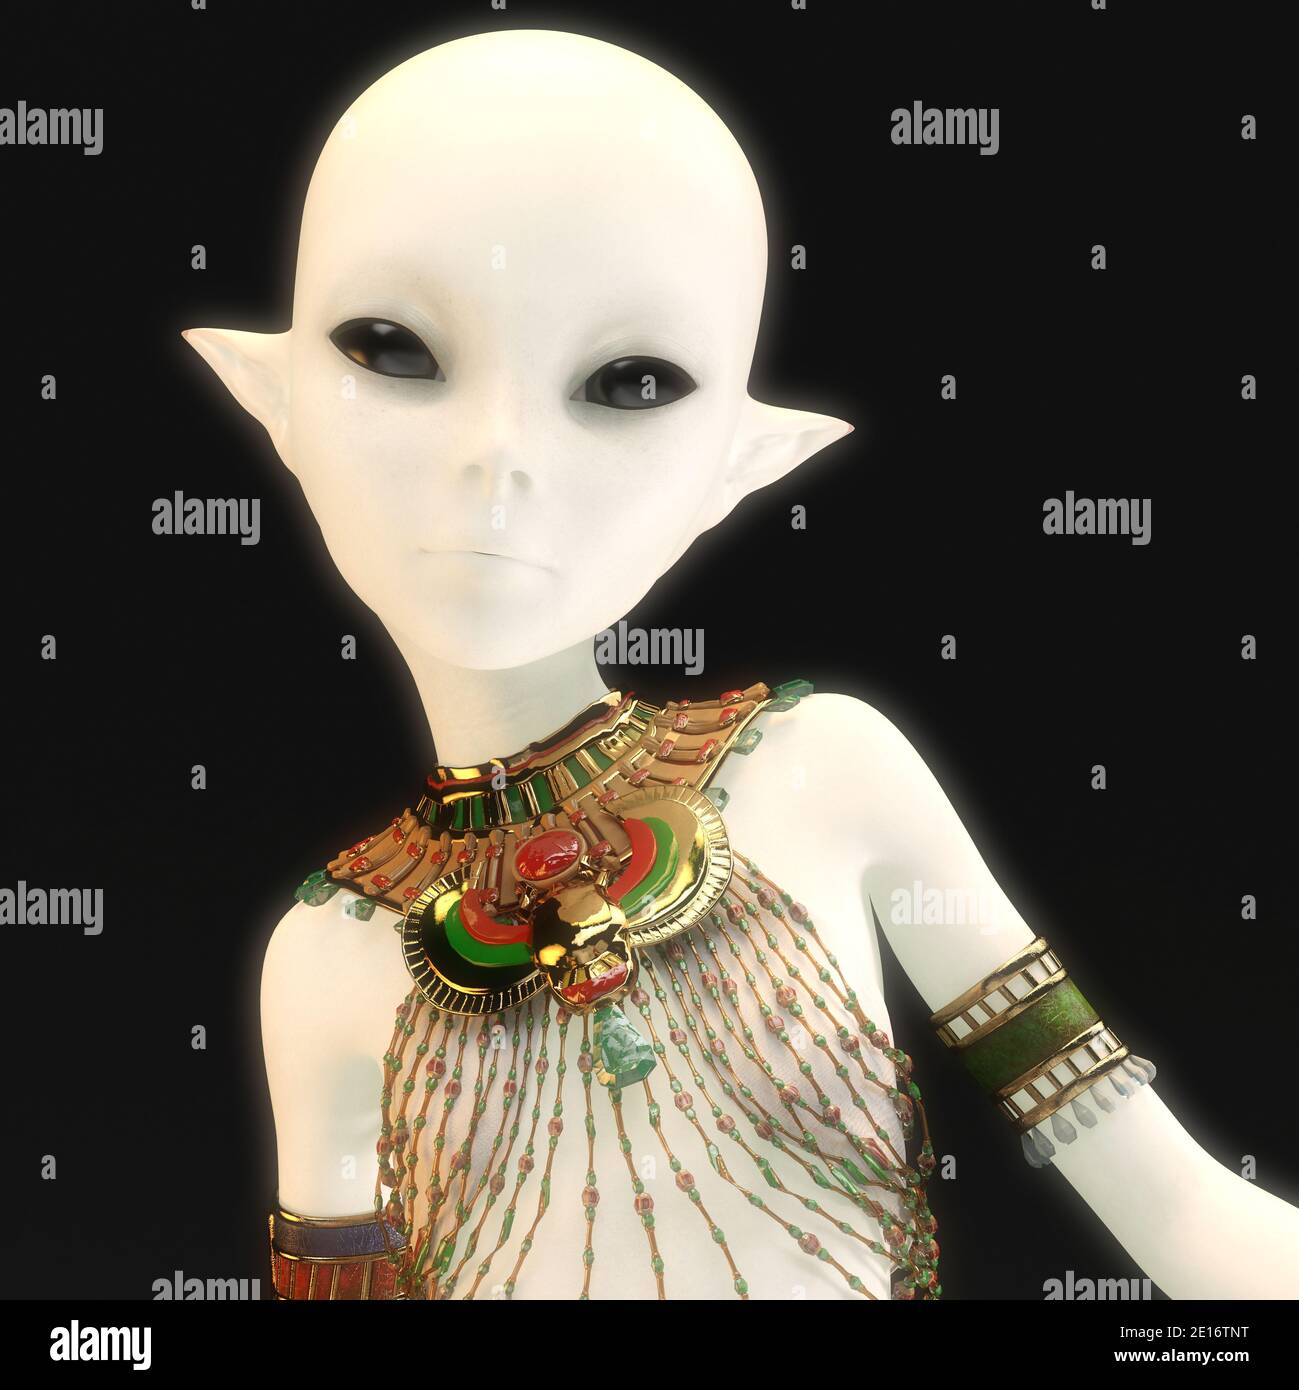 3D Illustration Of A Female Alien Stock Photo